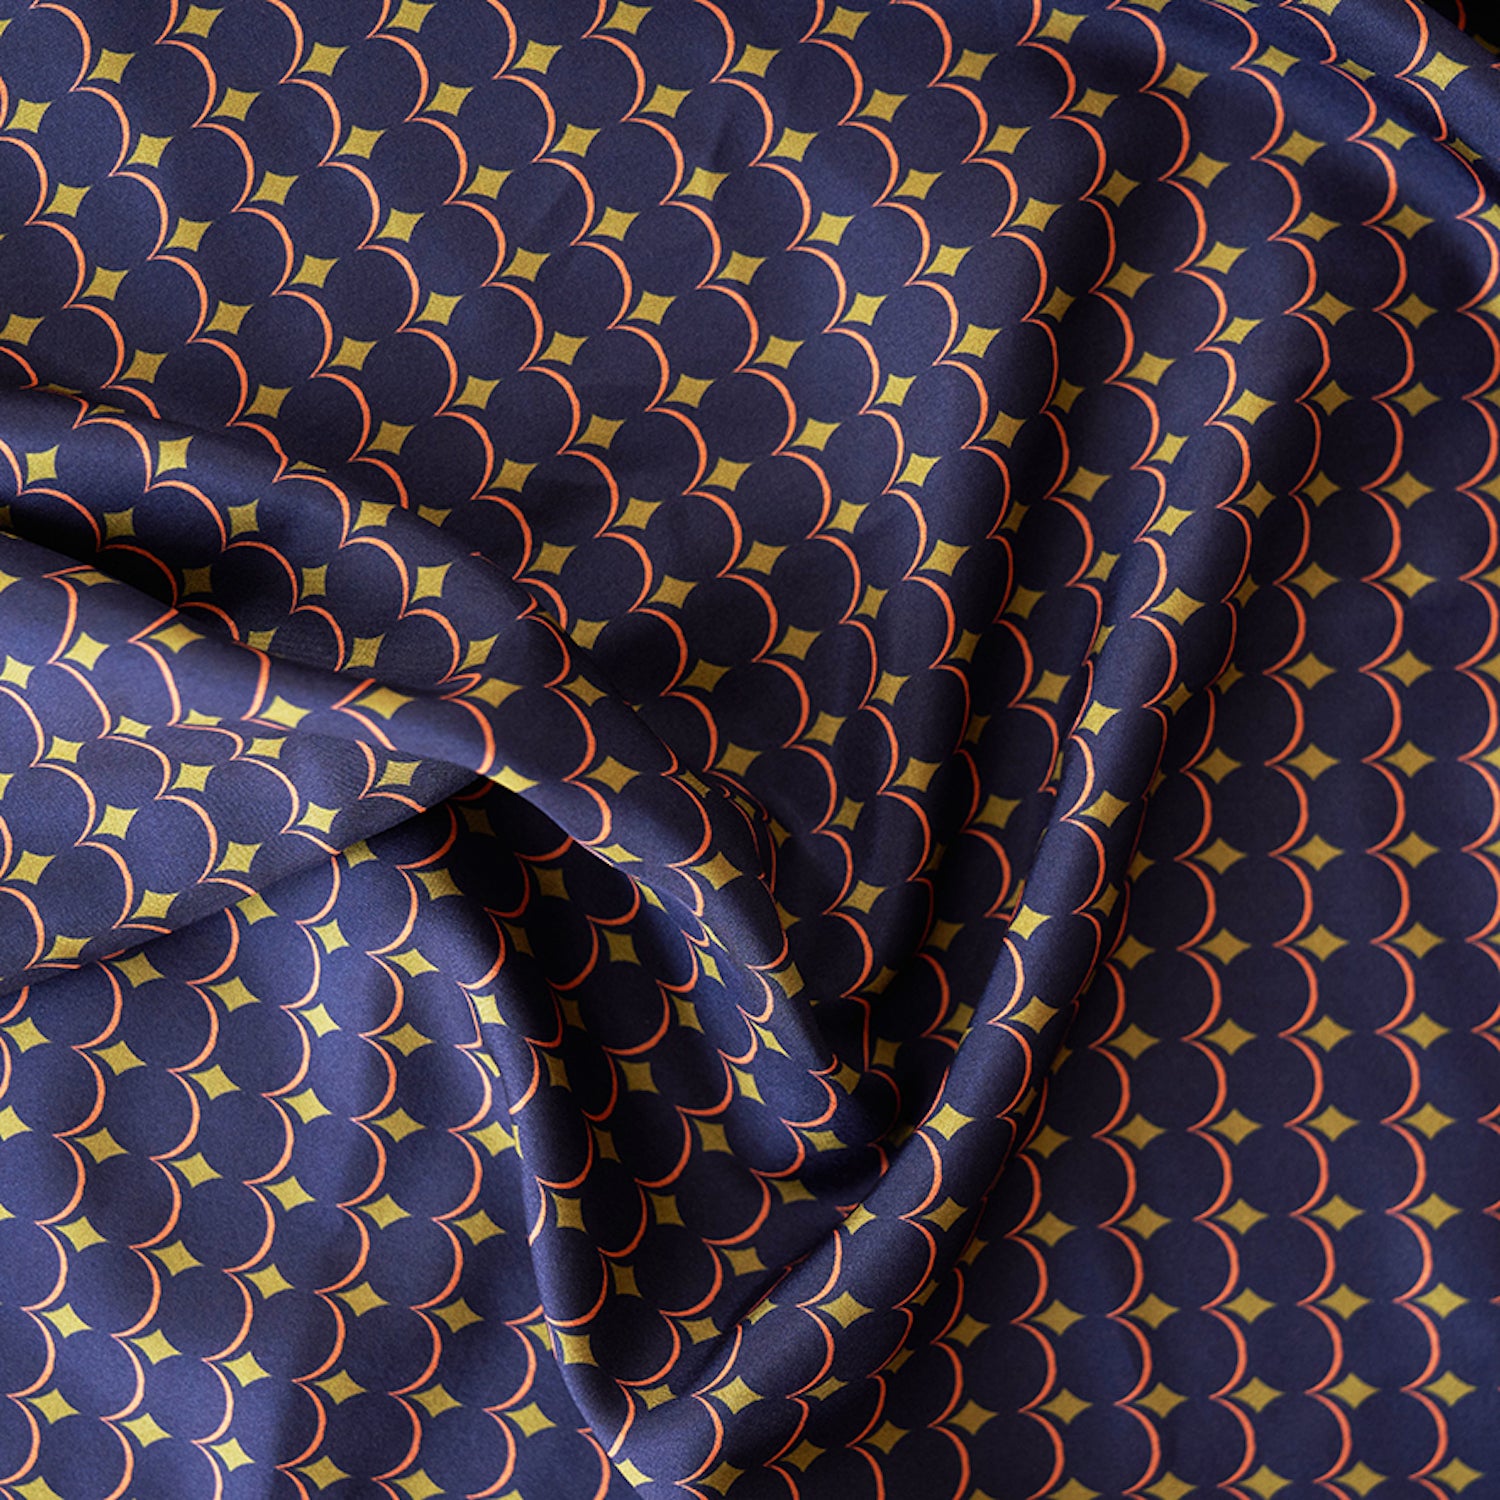 Foulard en soie 80 Meilleur Ami Paris. Gros plan sur les motifs bleu nuit, or et rouge orangé.